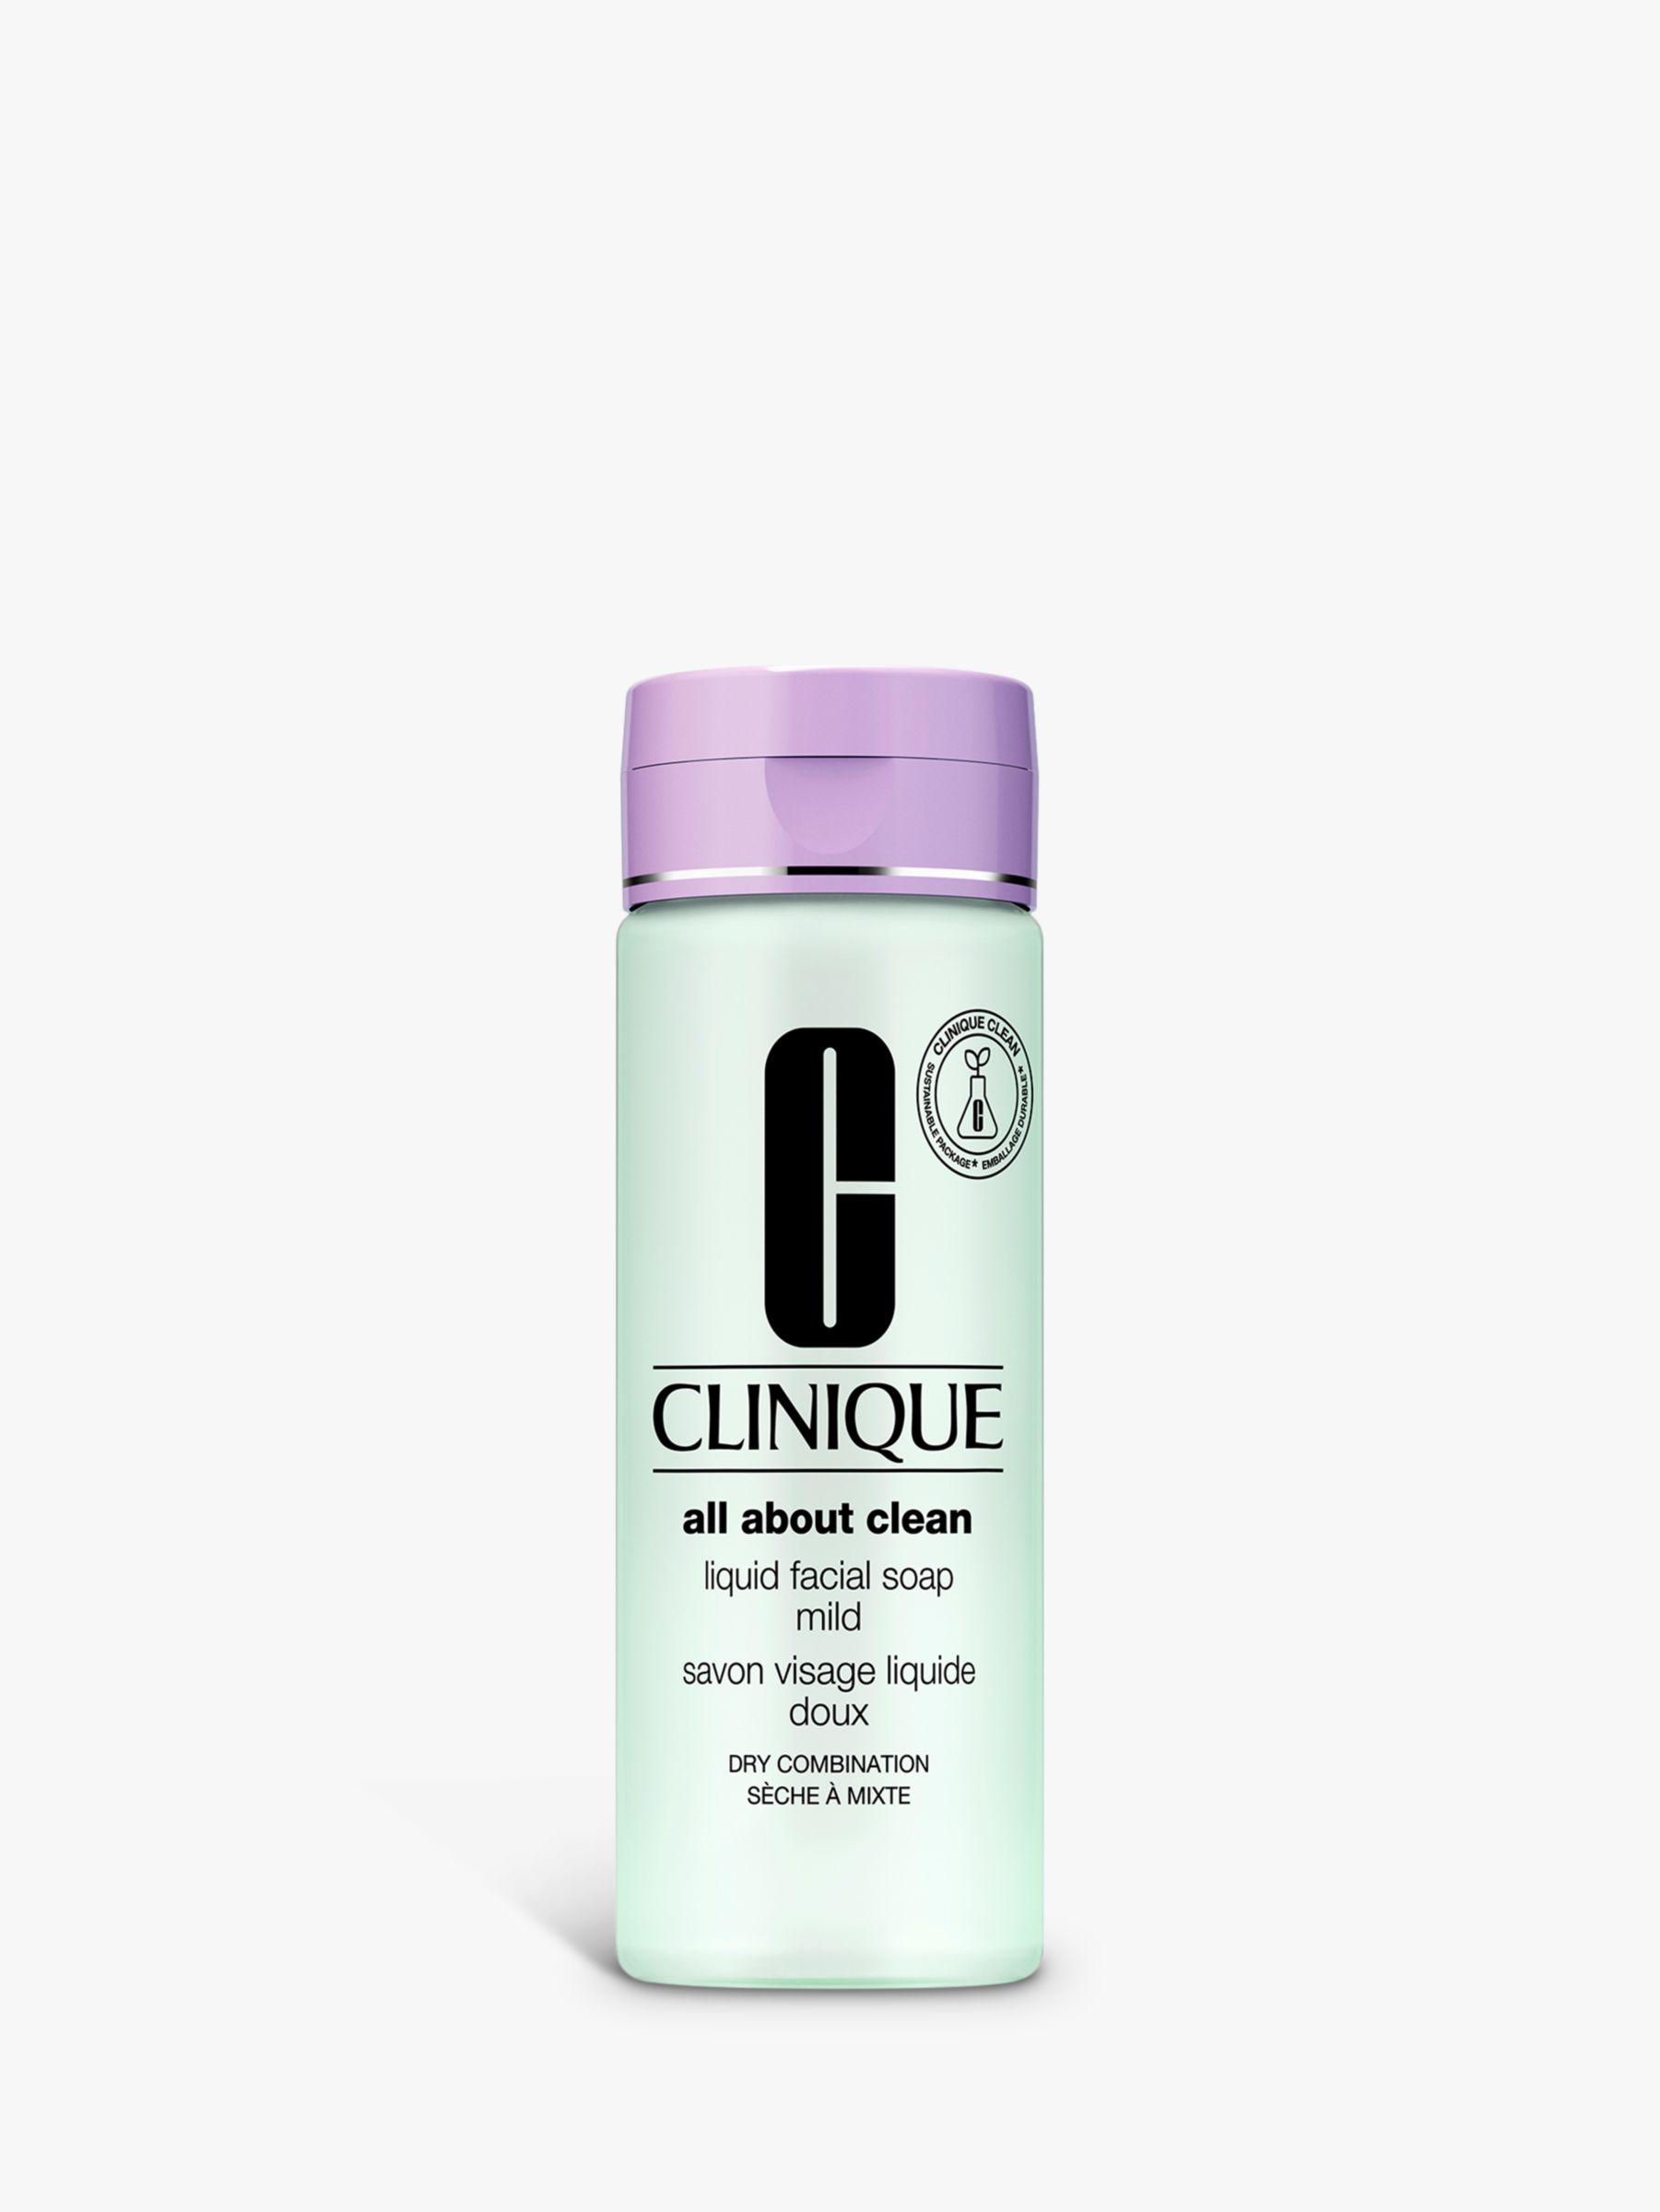 Clinique Liquid Facial Soap - Mild, 200ml at John Lewis & Partners